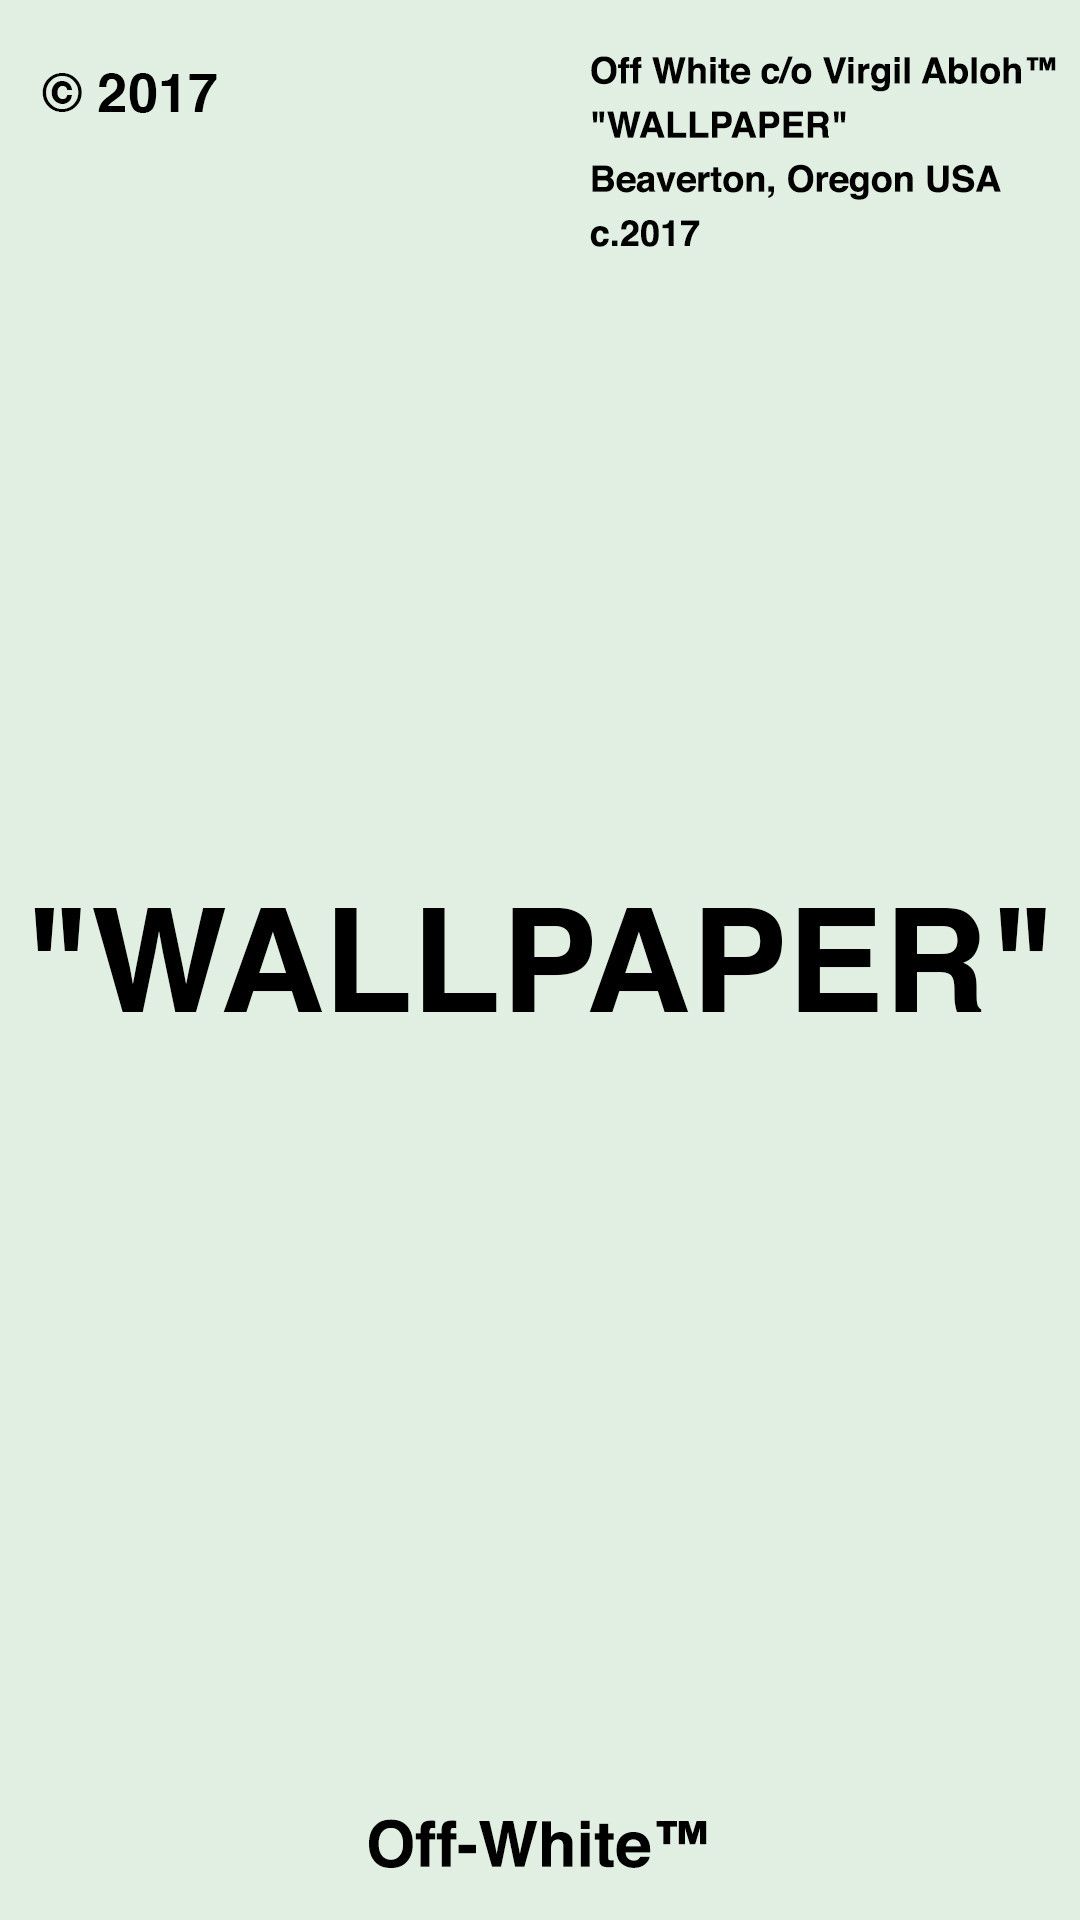 Supreme x Off-White collaboration wallpaper Virgil Abloh™/ Supreme®